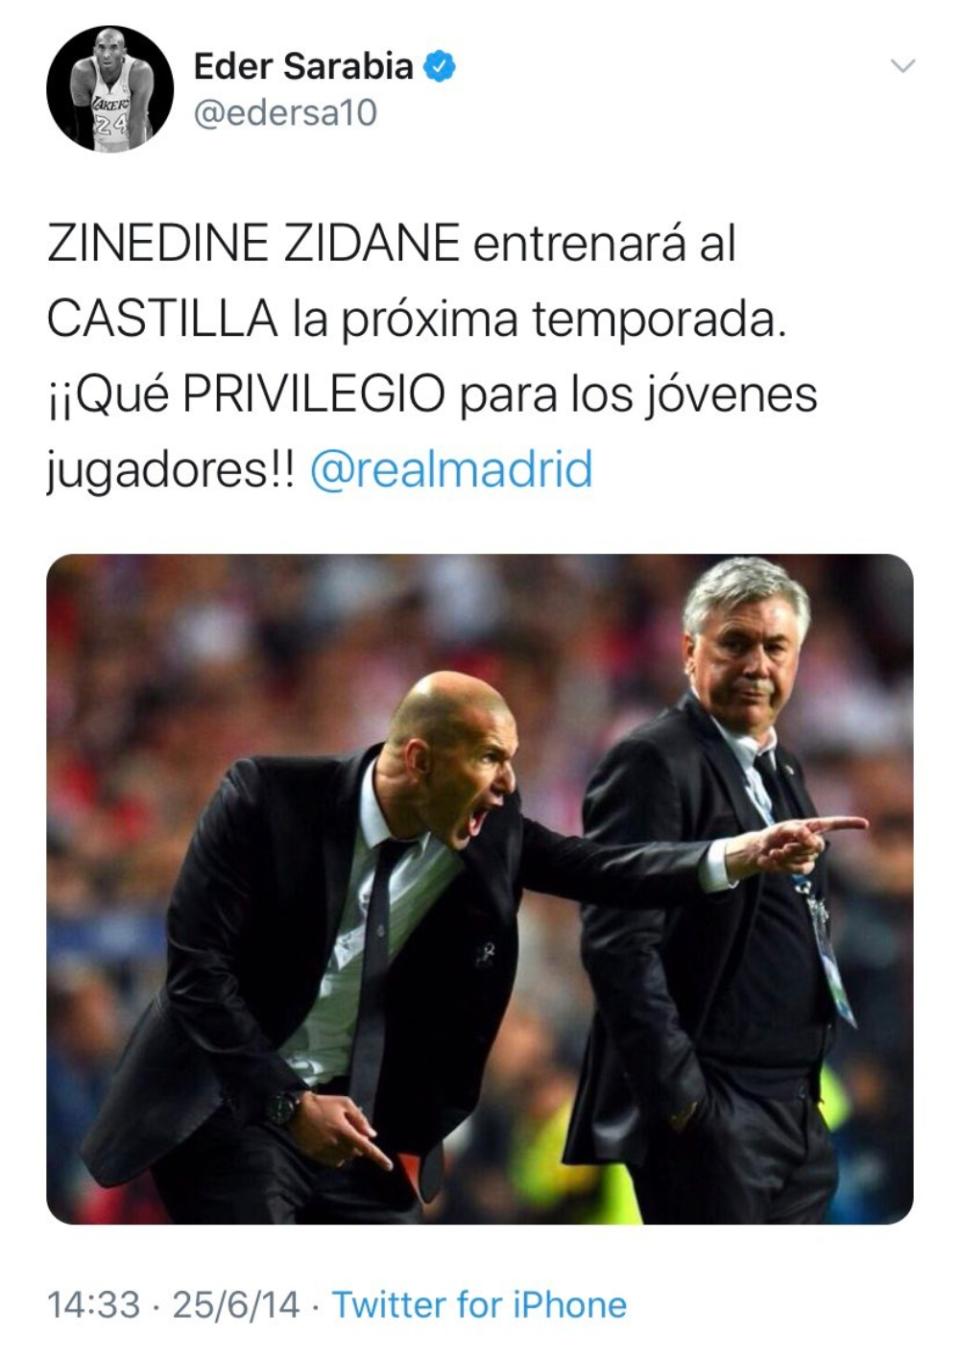 El técnico vizcaíno también admira a Zinedine Zidane y celebró que el francés se hiciera cargo del banquillo blanco en el verano de 2014. (Foto: Twitter / <a href="http://twitter.com/edersa10" rel="nofollow noopener" target="_blank" data-ylk="slk:@edersa10" class="link ">@edersa10</a>).